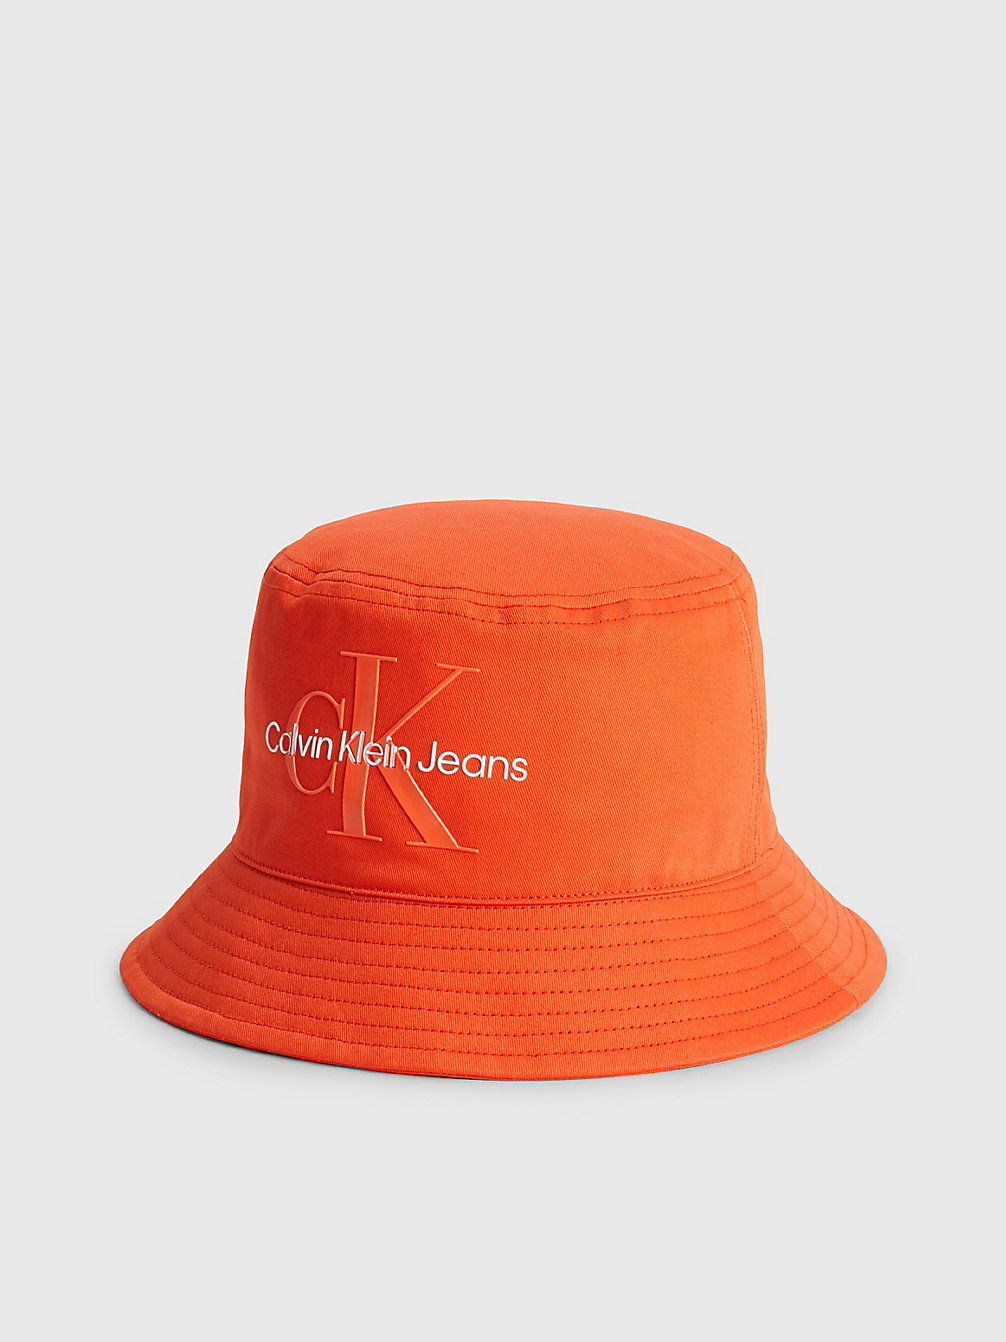 POPPY > Kapelusz Typu Bucket Hat Z Bawełny Organicznej > undefined Kobiety - Calvin Klein